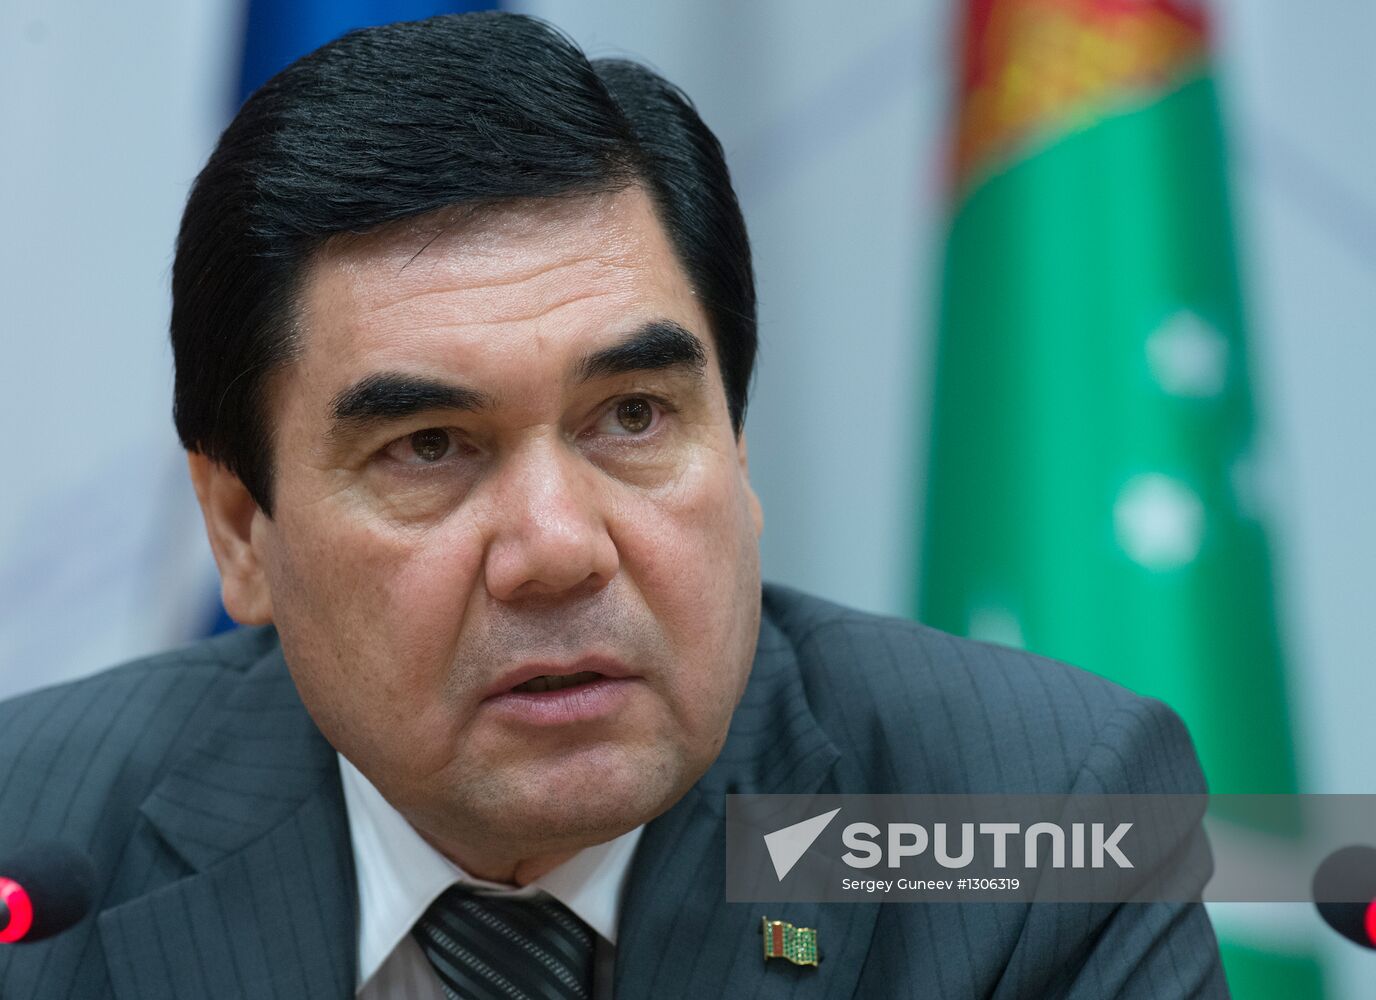 Turkmen President Gurbanguly Berdymukhamedov